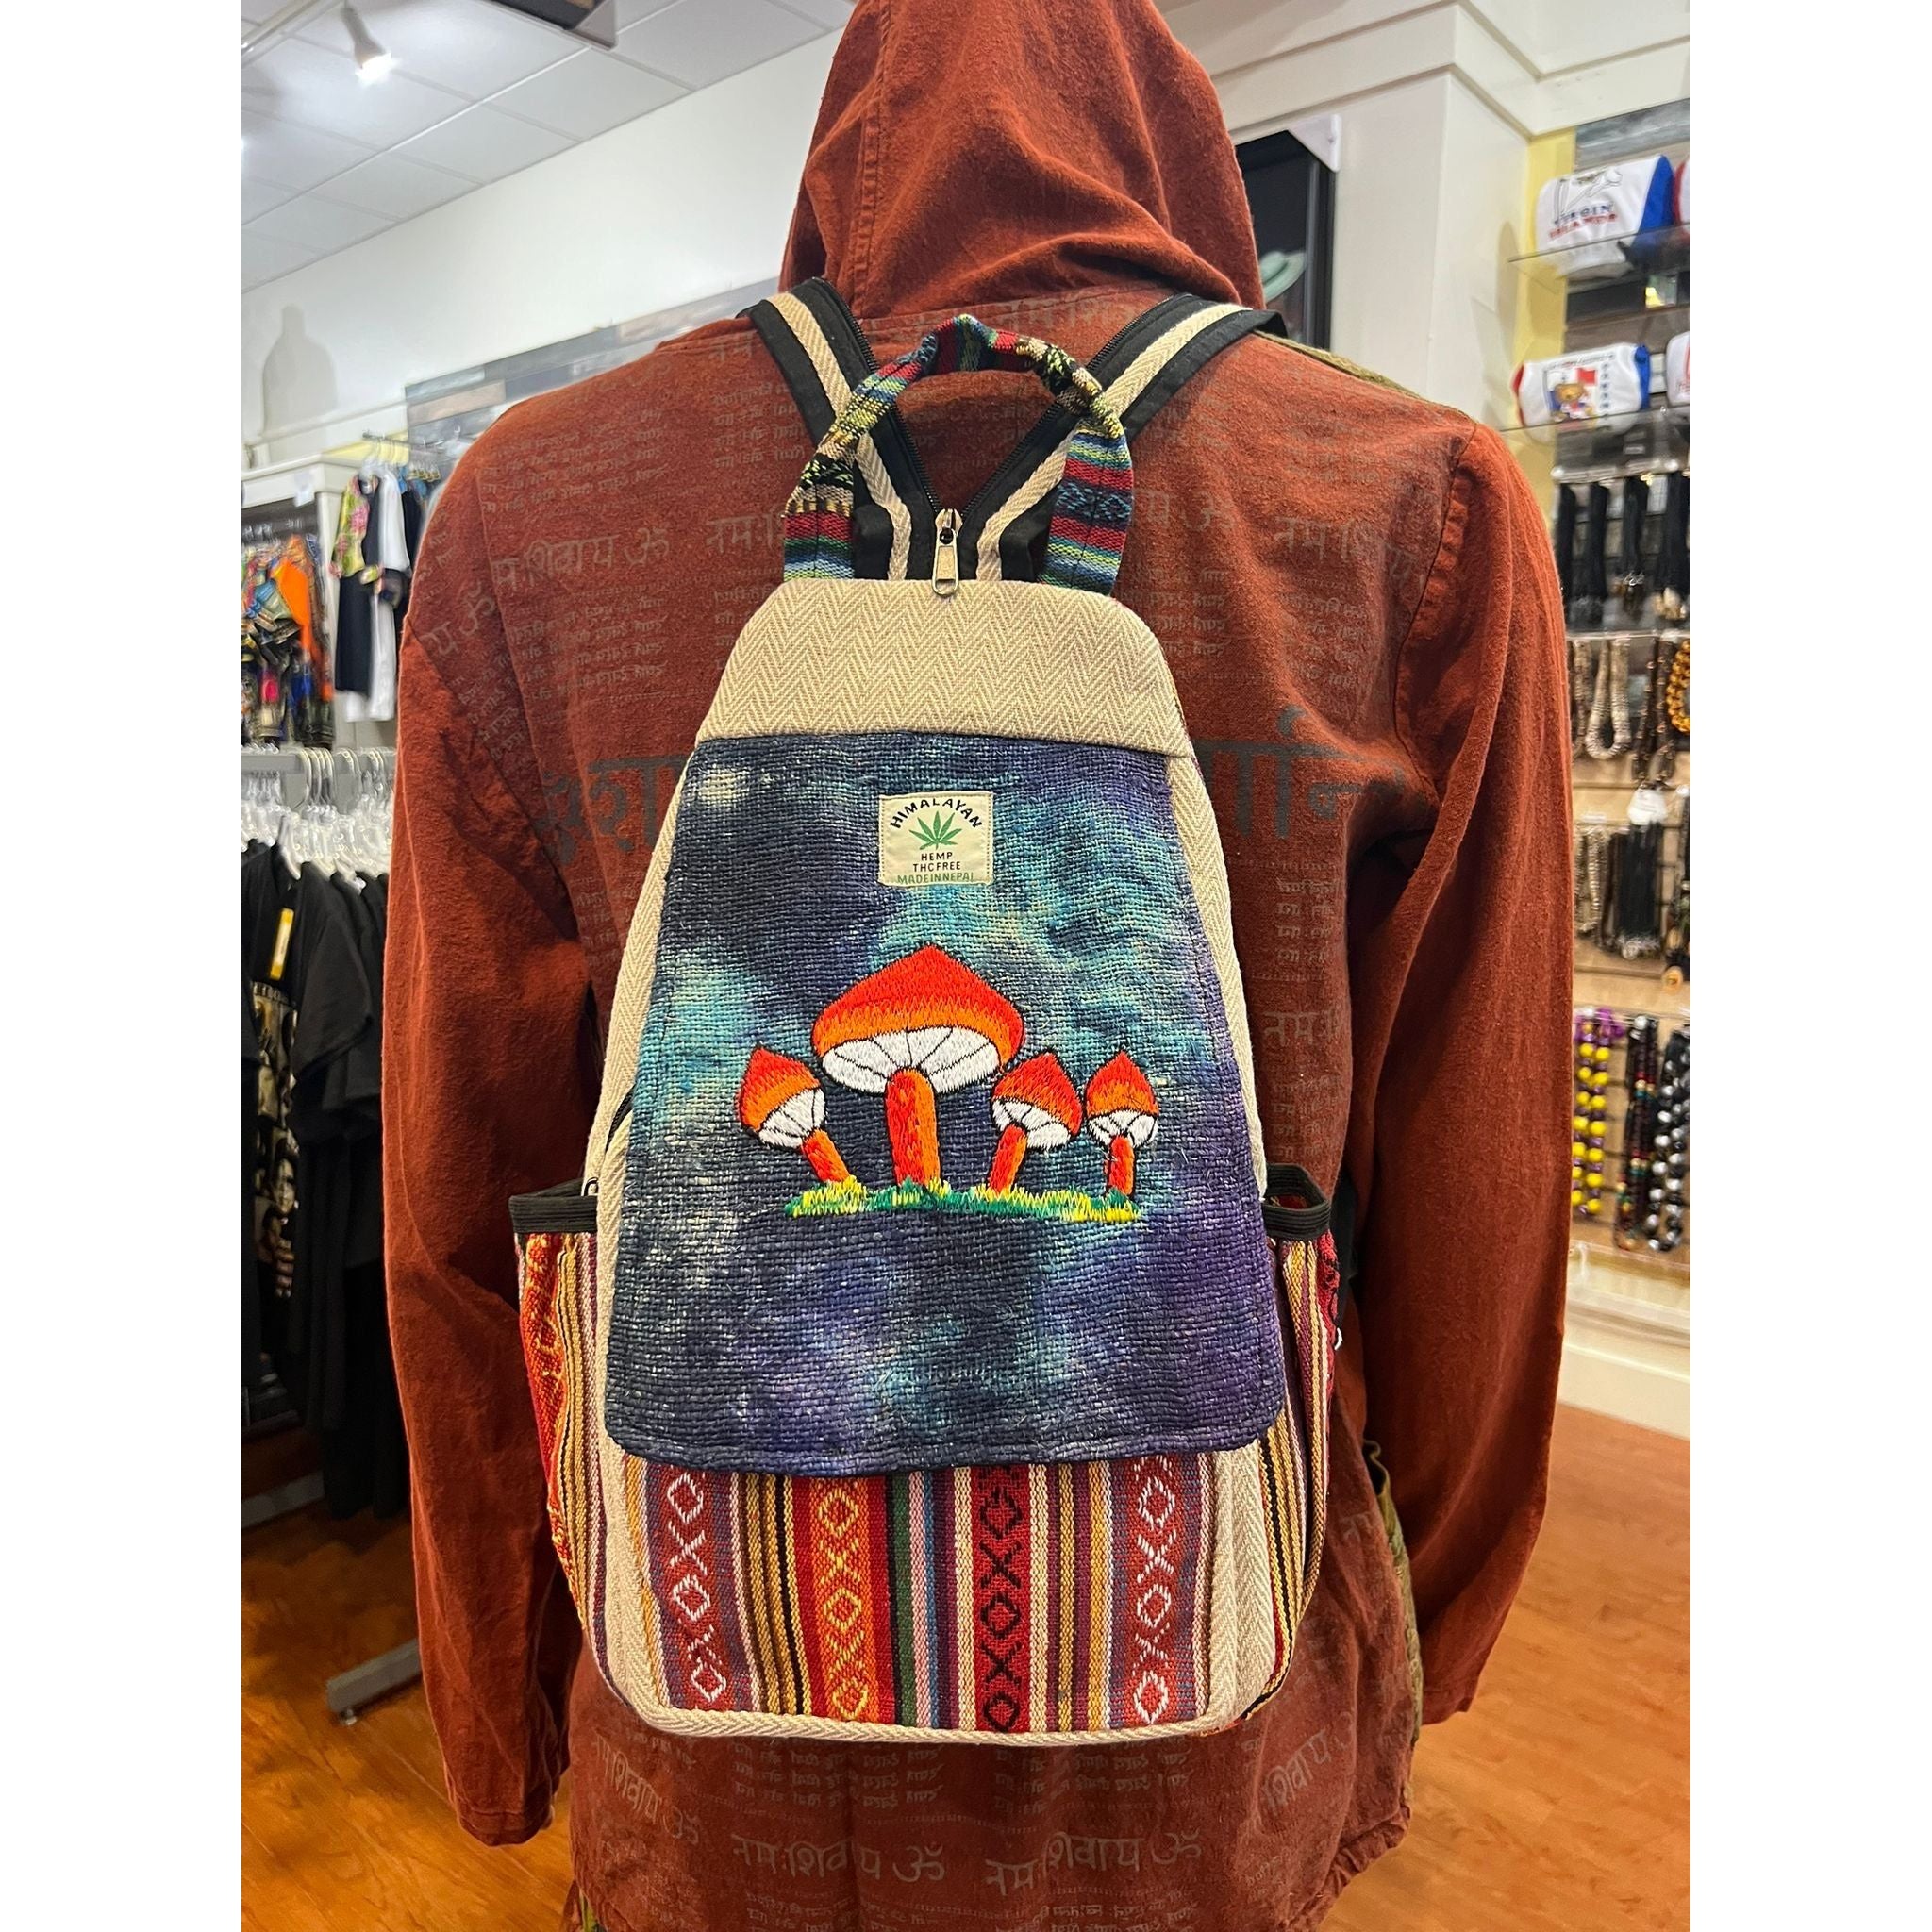 Mushroom Embroidery Hemp Backpack.